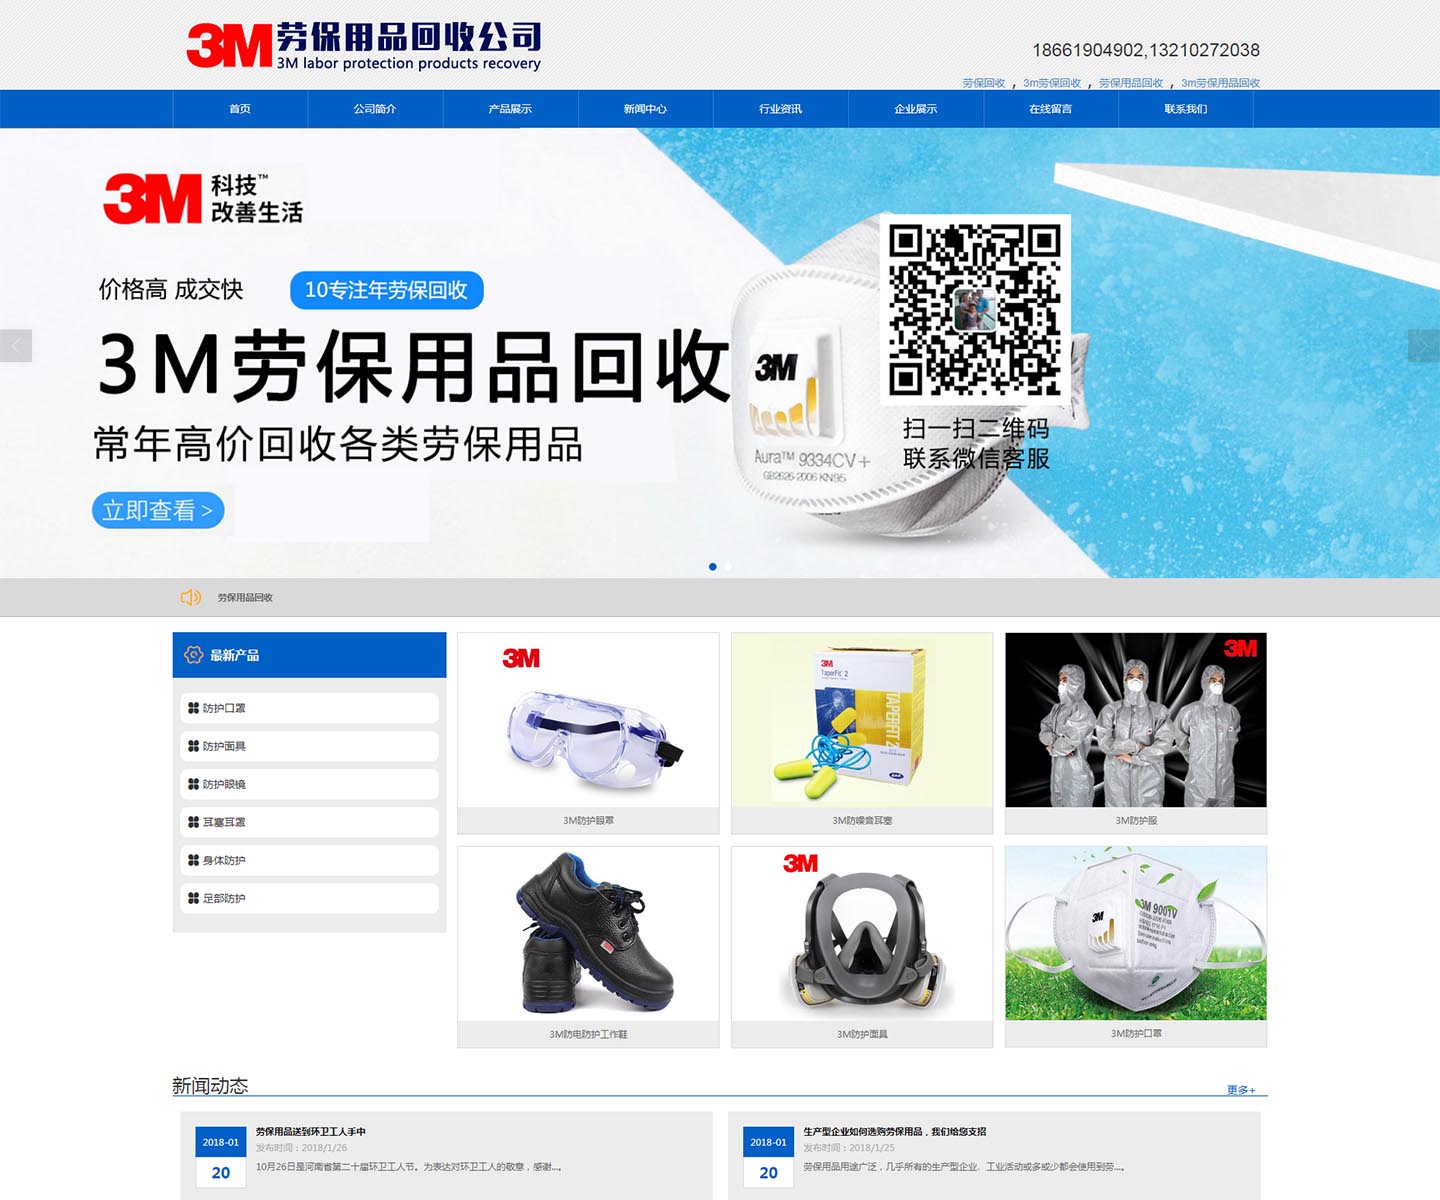 3M劳保公司-中文版官方网站